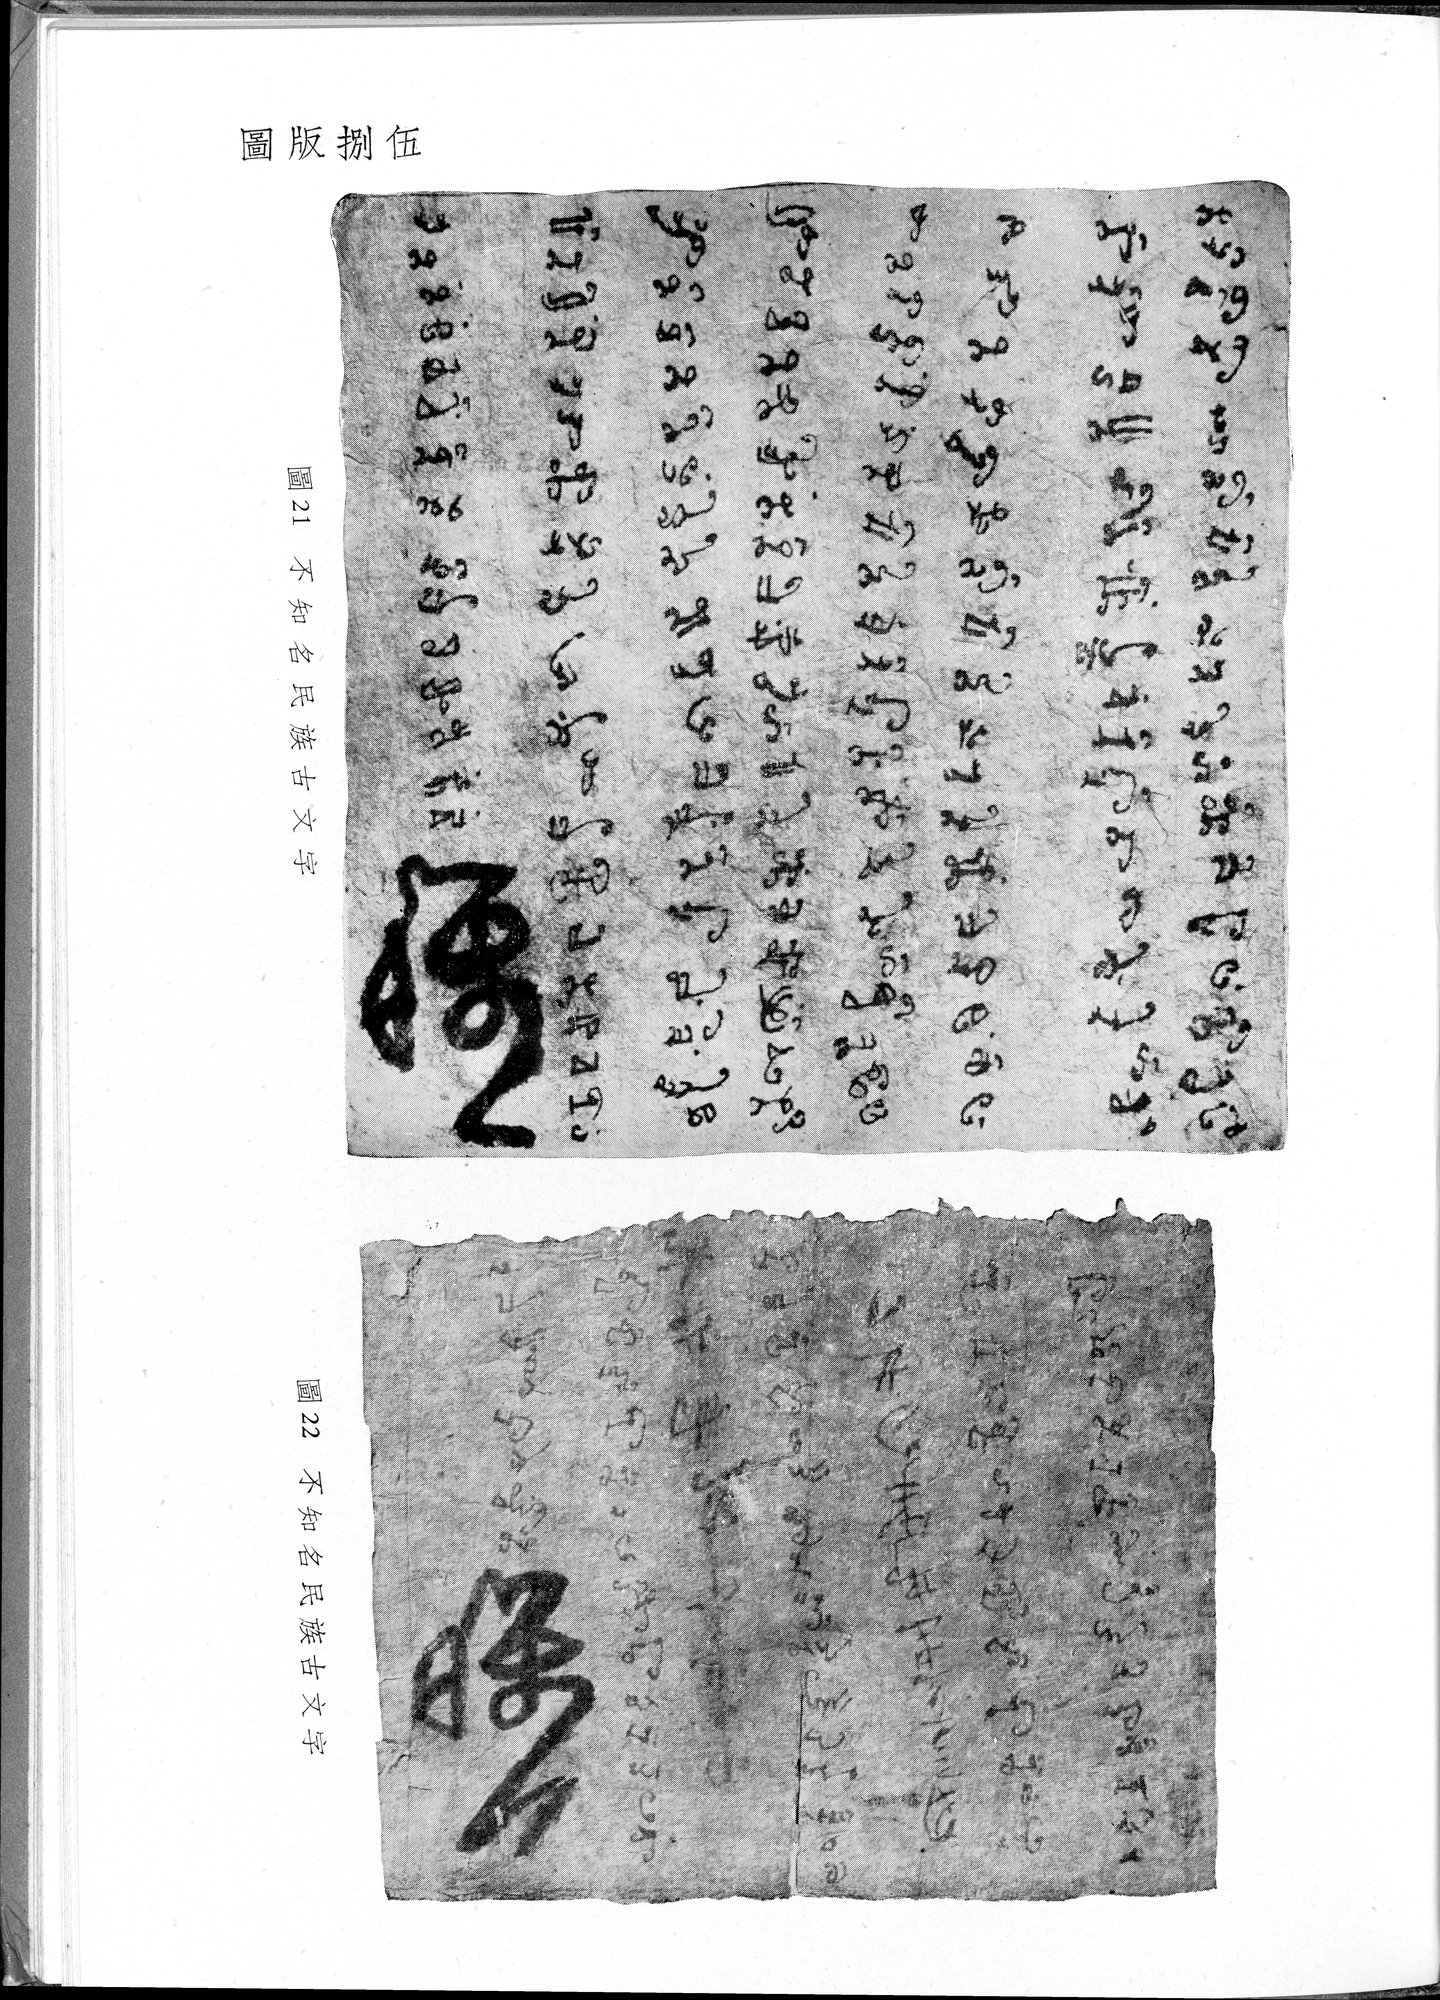 塔里木盆地考古記 : vol.1 / Page 319 (Grayscale High Resolution Image)